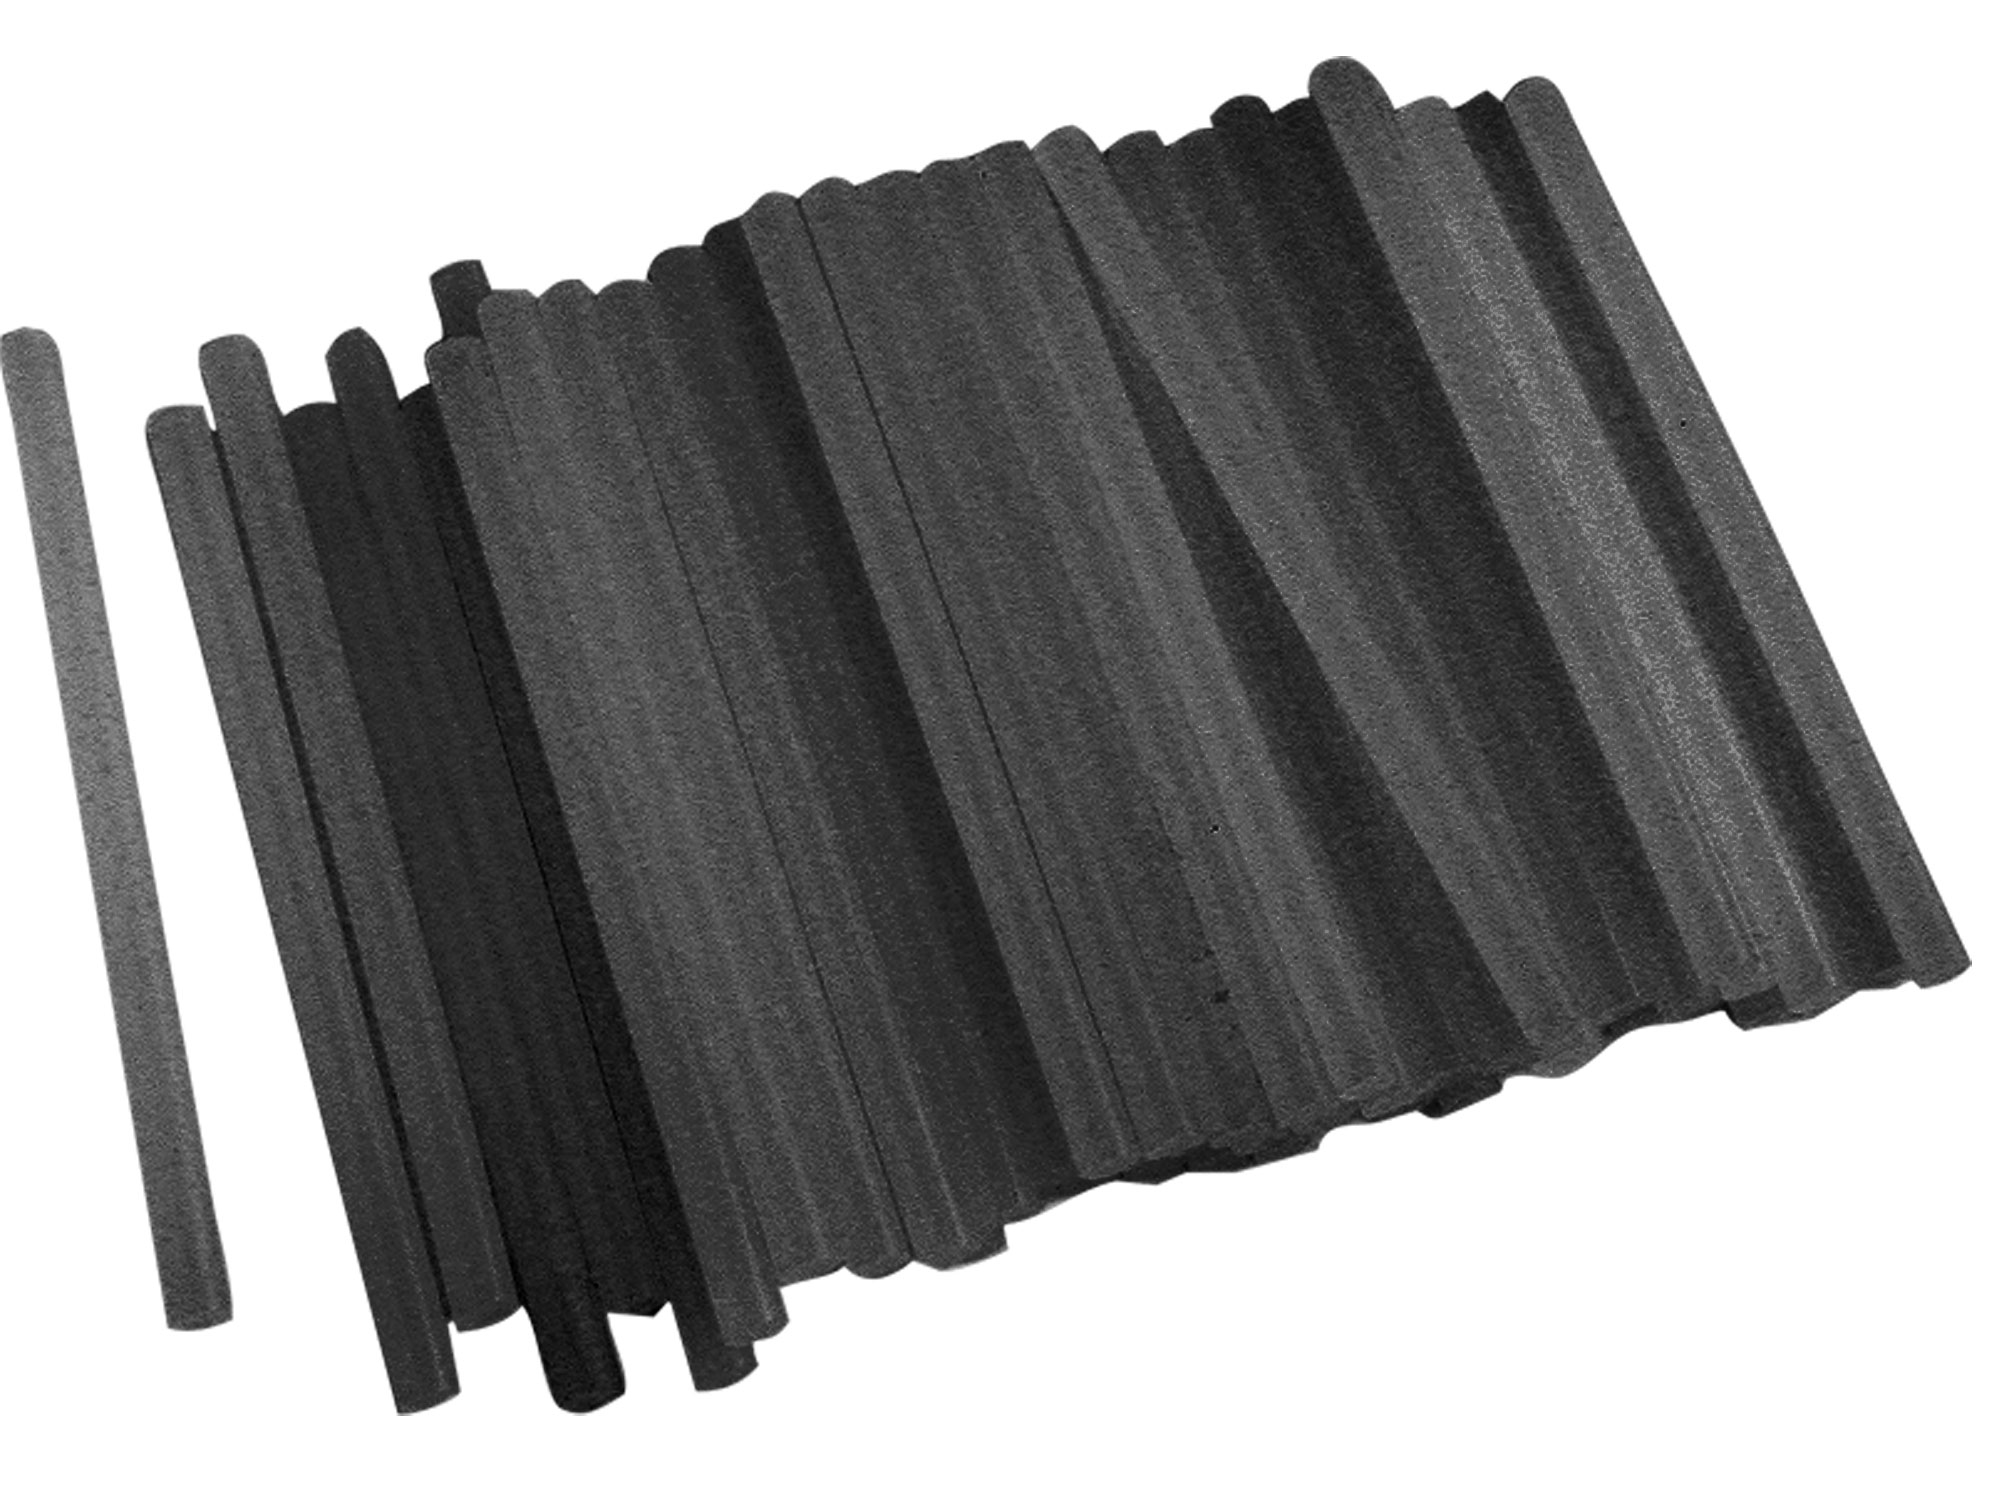 tyčinky tavné, černá barva, O 11x200mm, 1kg